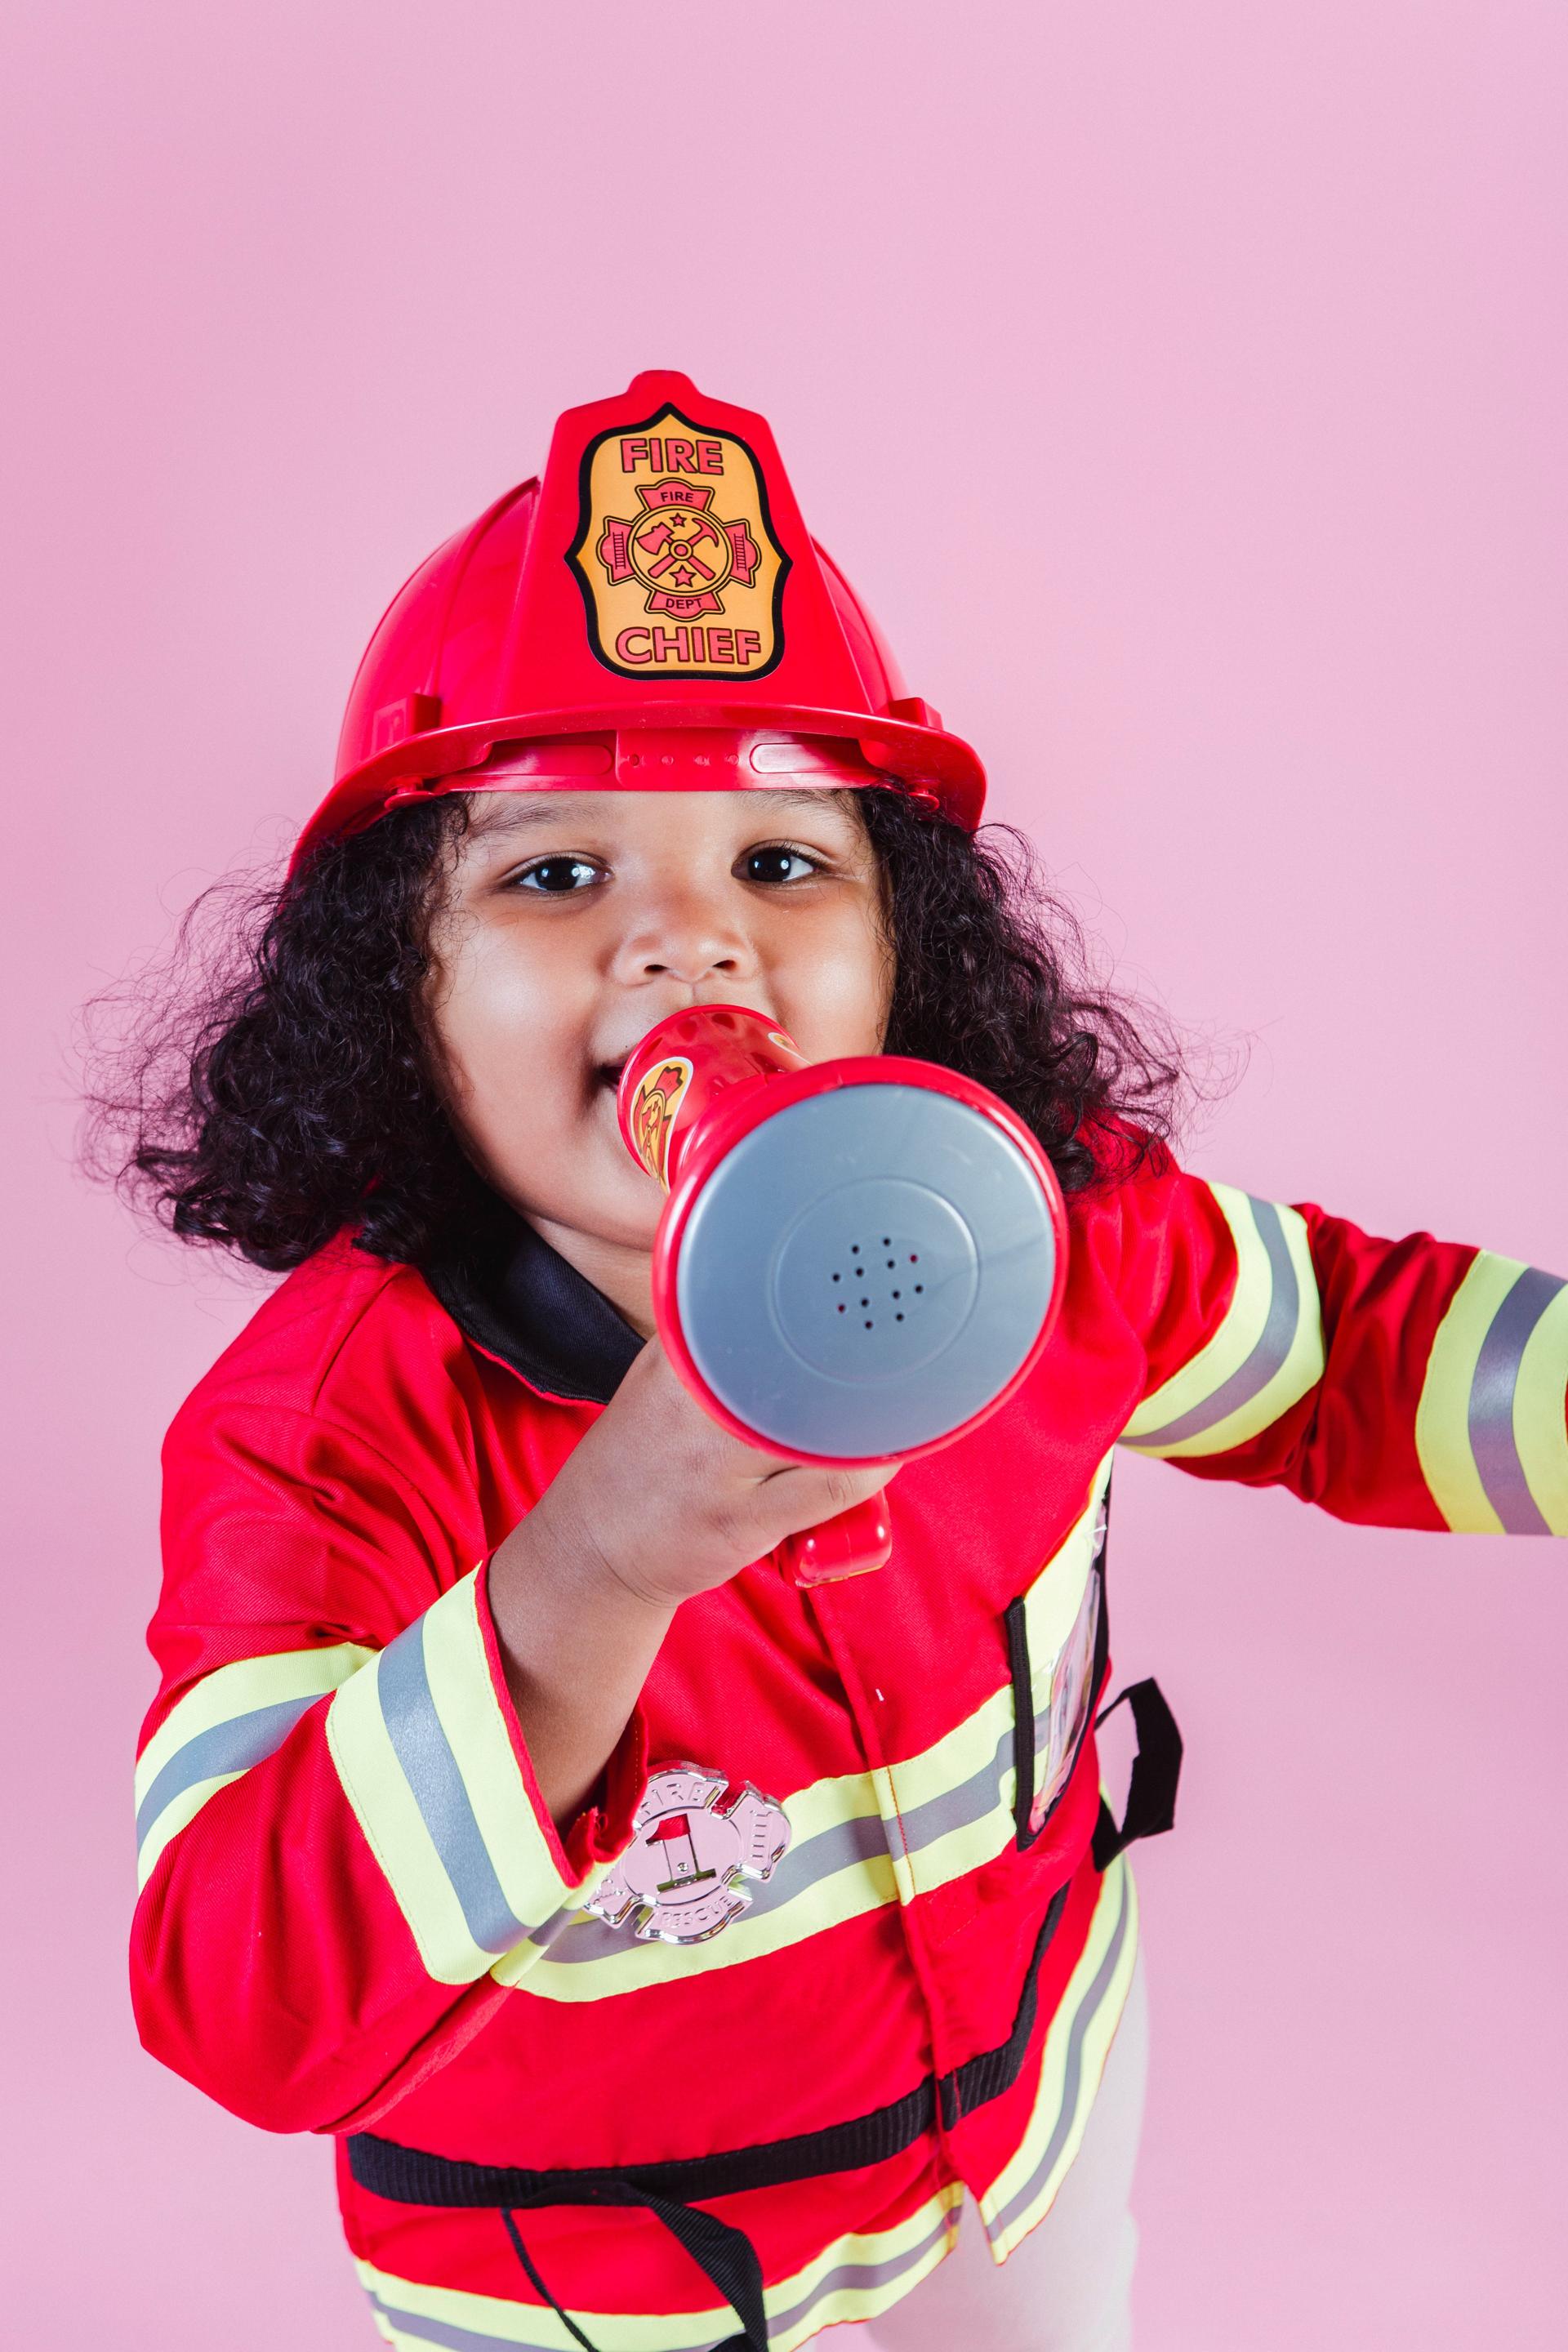 Wstępne wymagania i kwalifikacje kandydatów do straży pożarnej